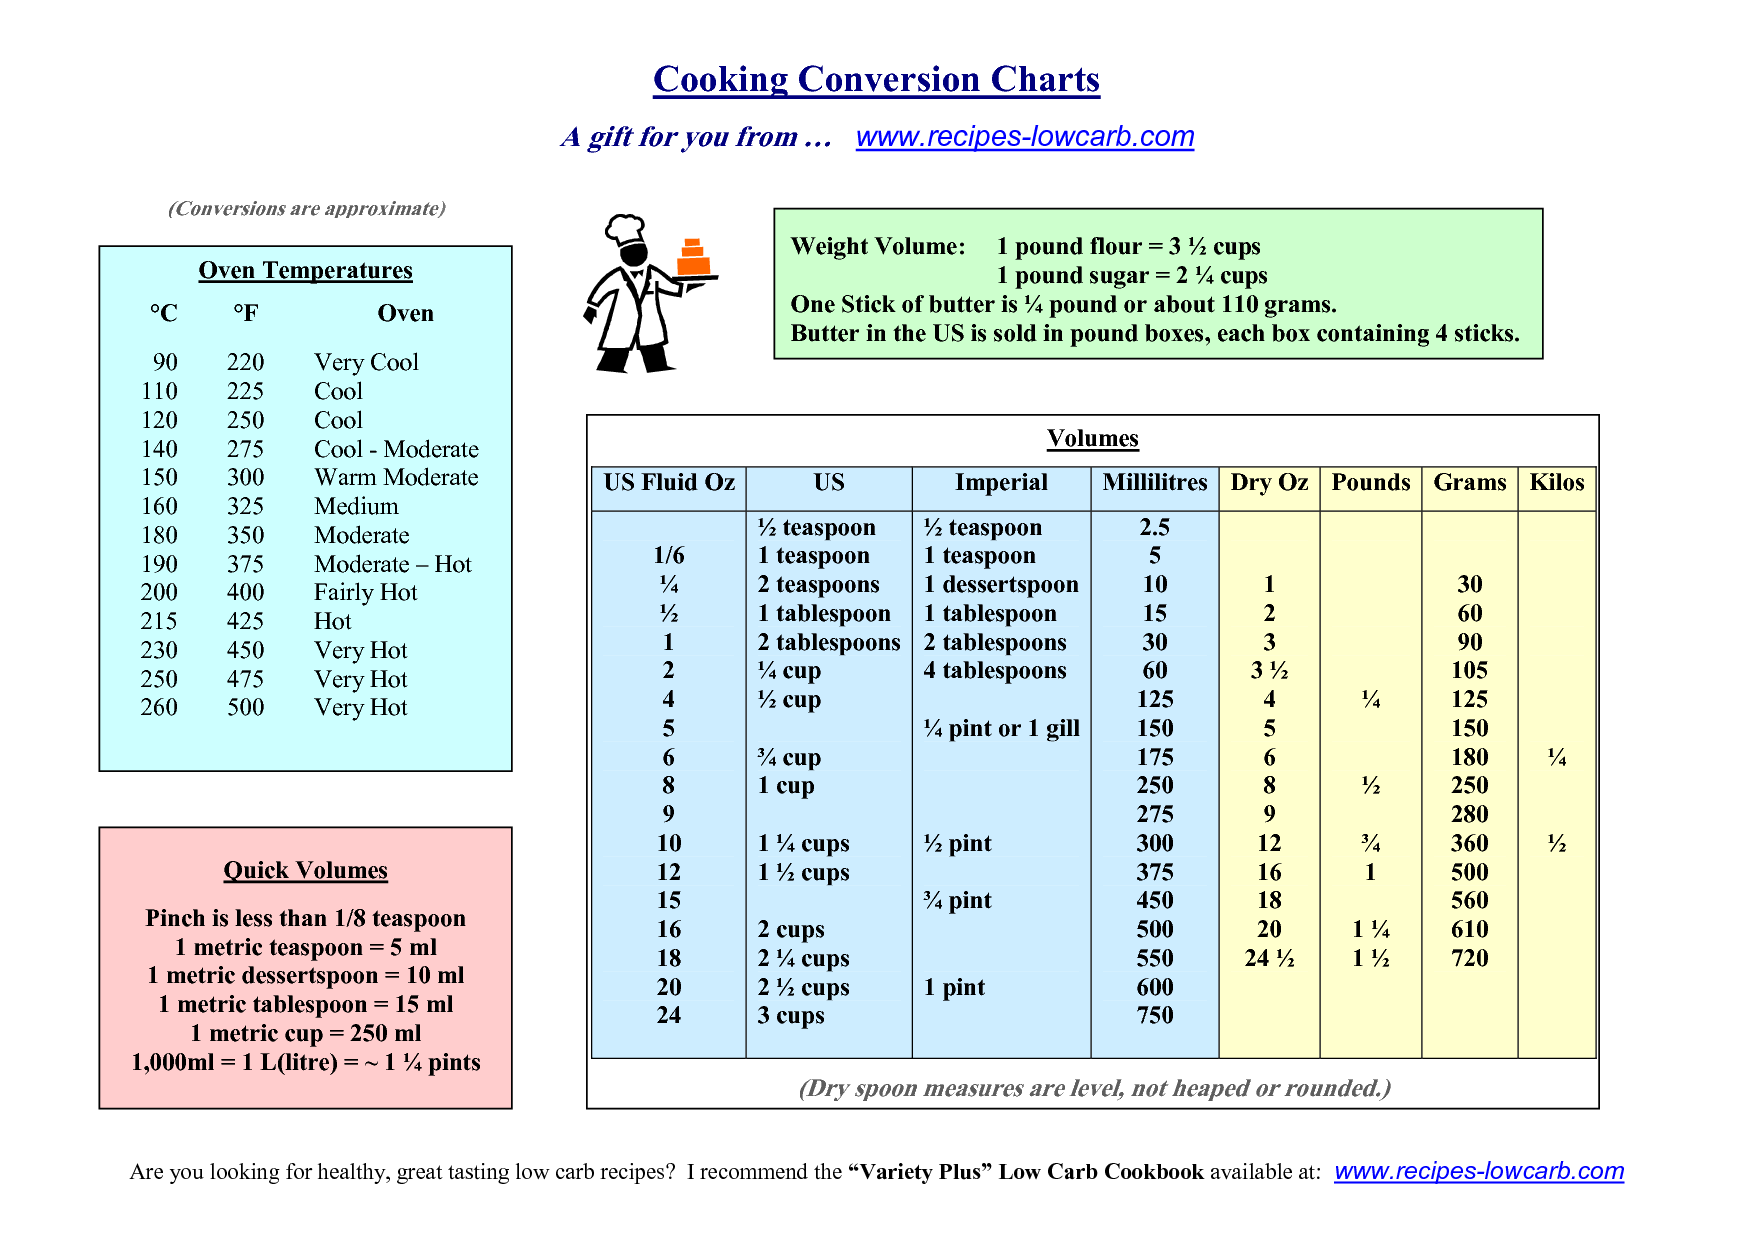 Printable Kitchen Conversion Chart Sugar and Charm Sugar and 